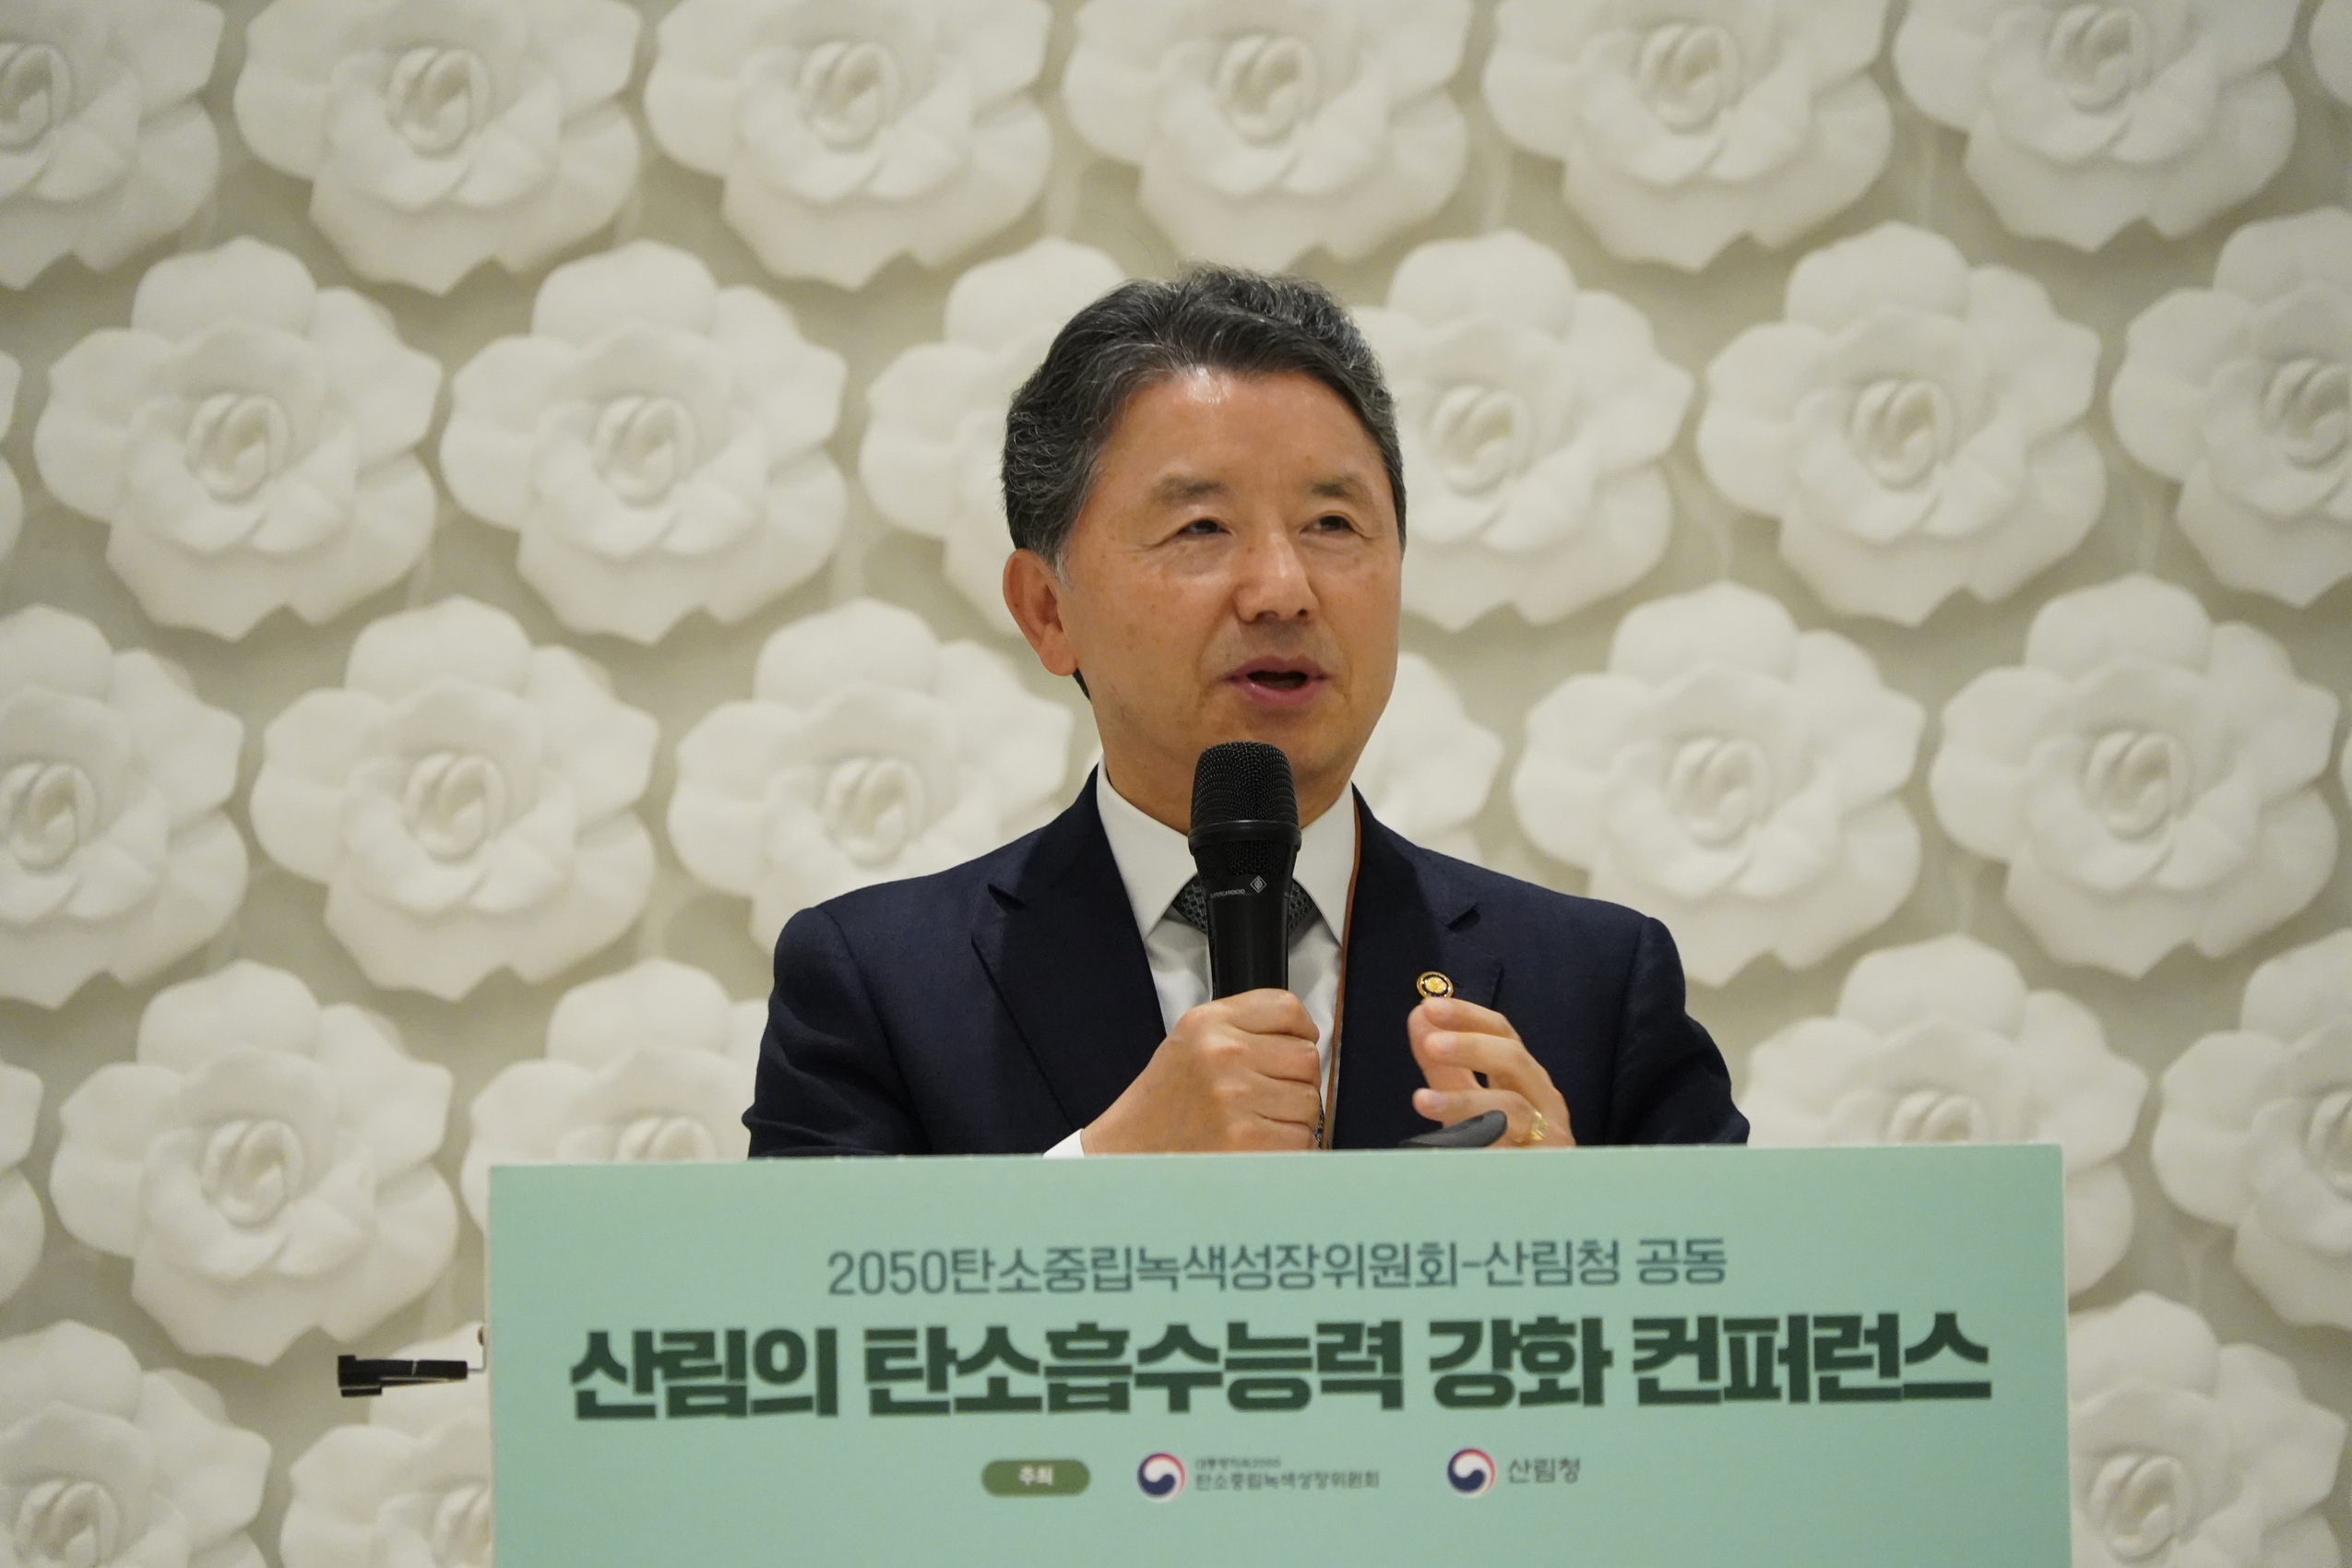 ‘산림의 탄소흡수능력 강화 학술대회’ 개최 